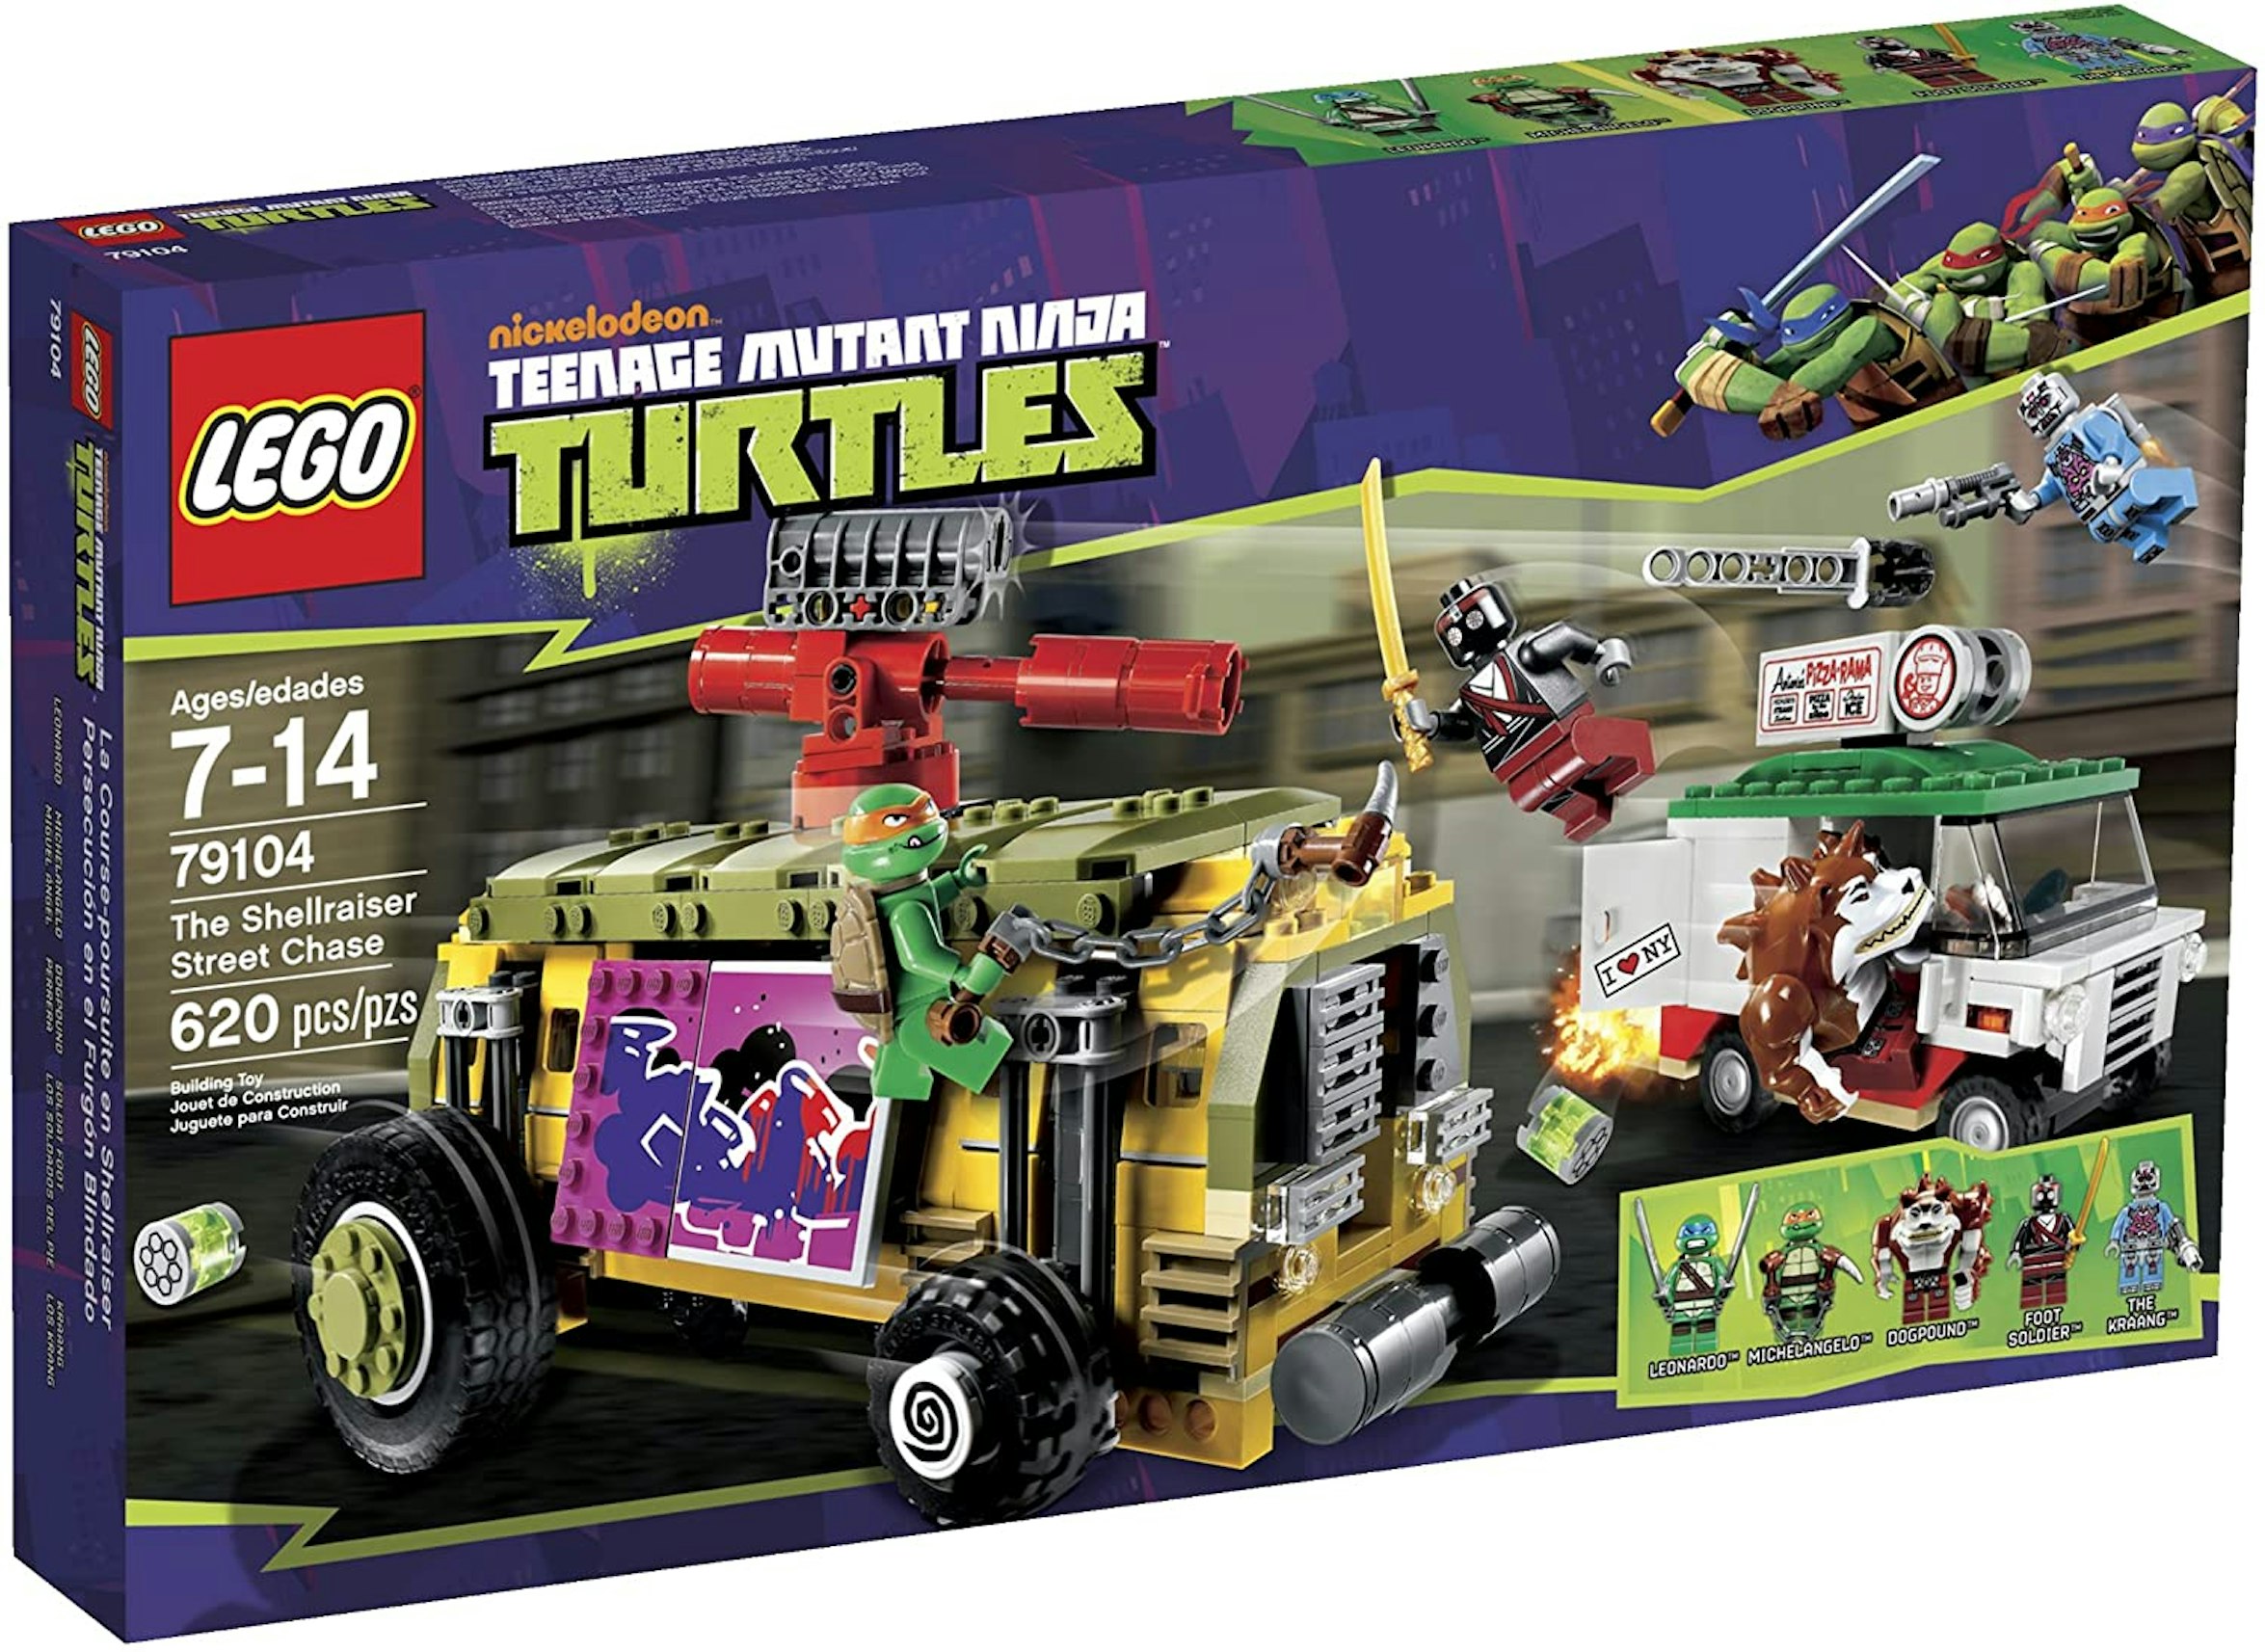 LEGO Teenage Mutant Ninja Turtles Shellraiser Street Chase Set 79104 - US